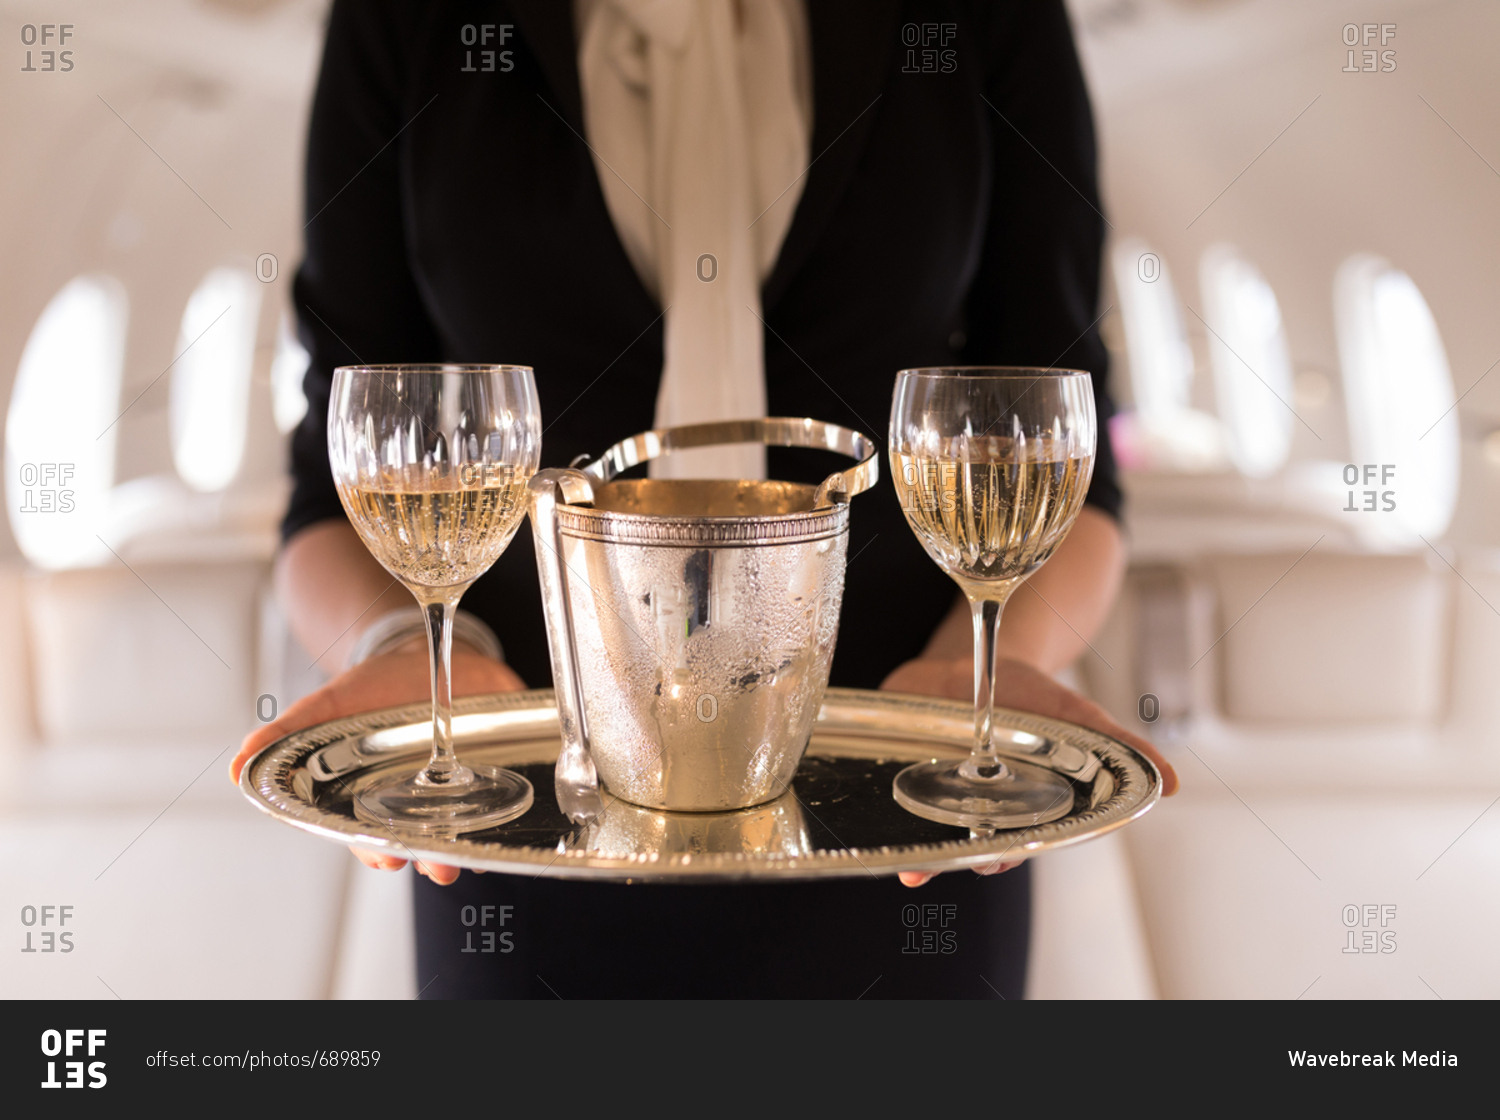 Шампанское в самолете можно. Шампанское в самолете. Бокал шампанского в самолете. Шампанское в частном самолете. Фужеры шампанского в самолете.